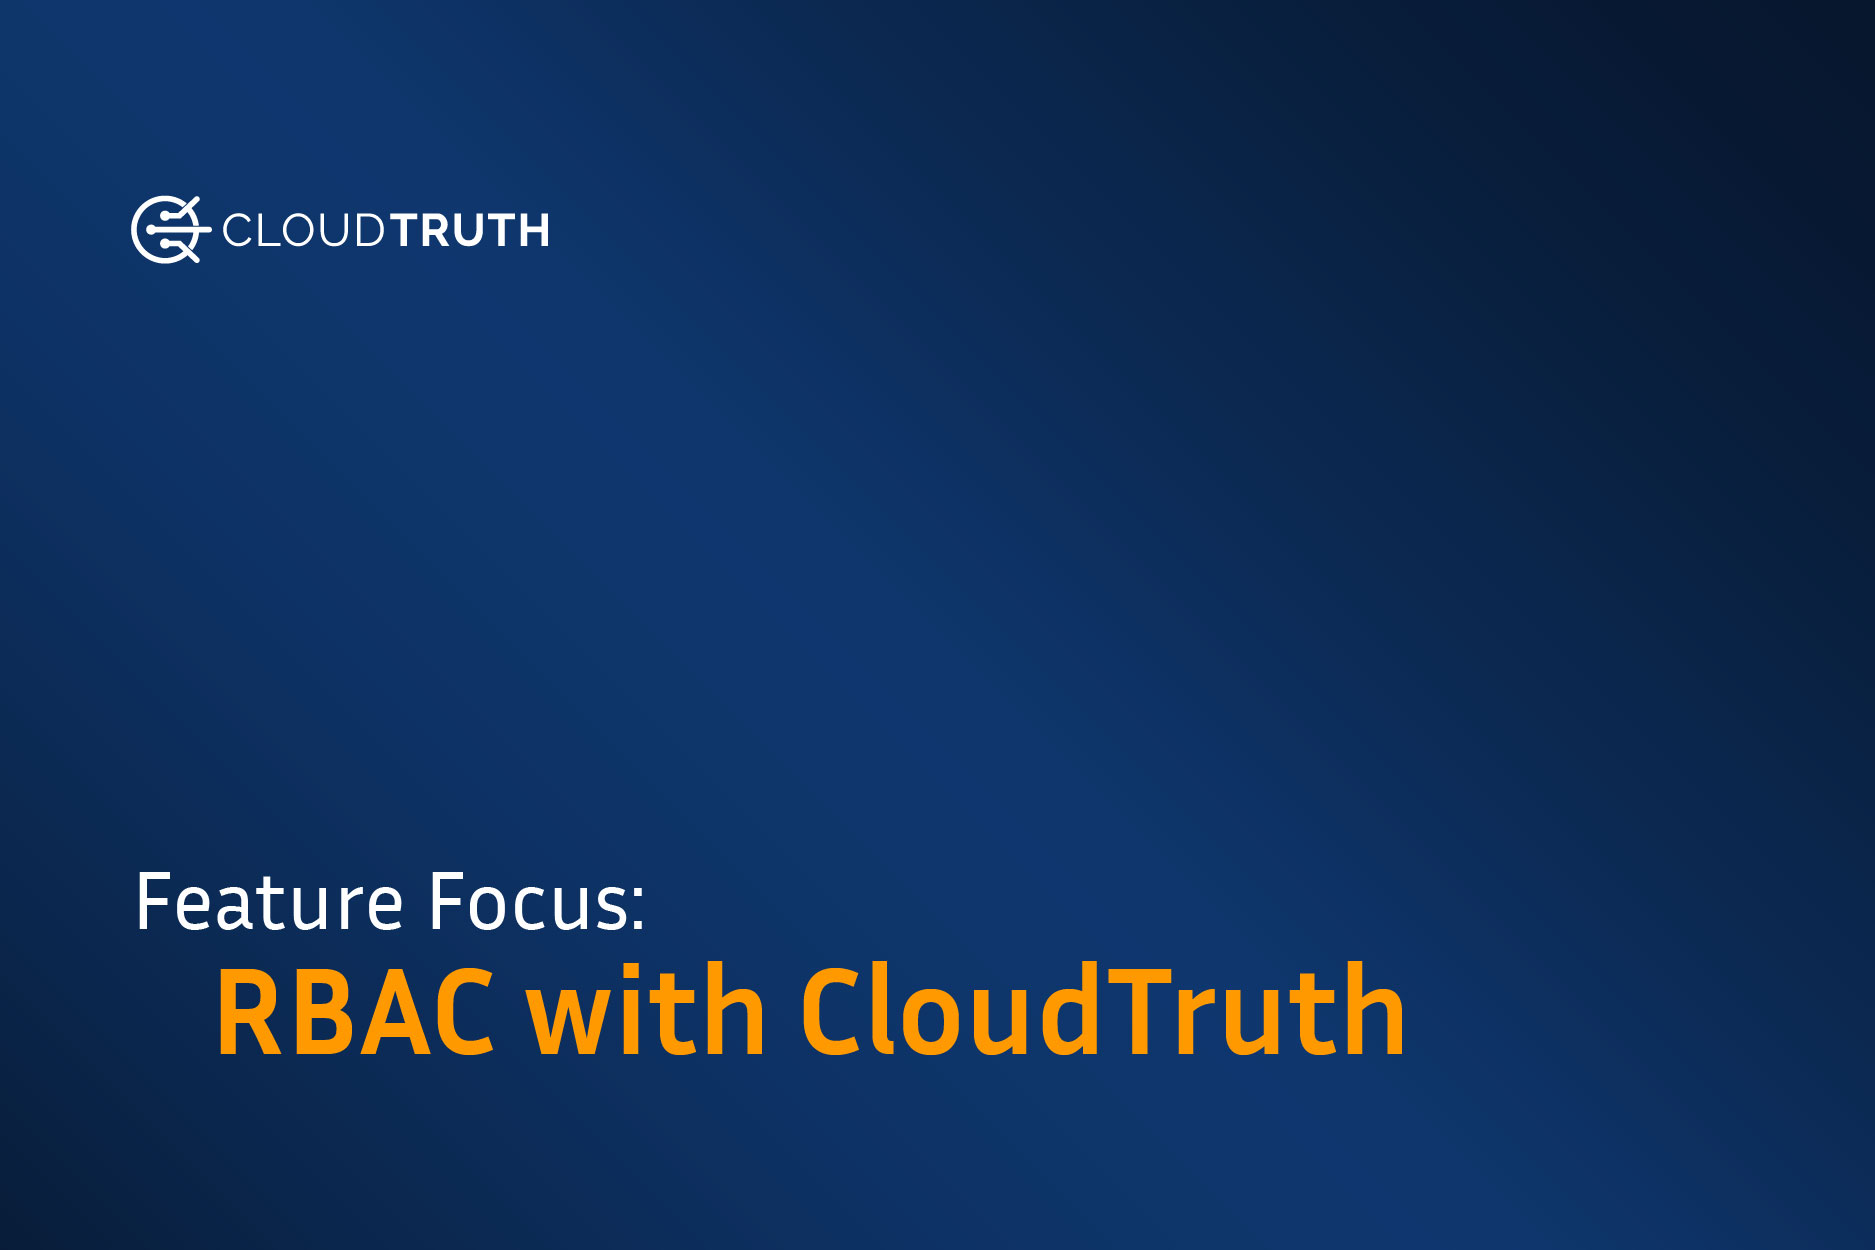 Feature Focus: CloudTruth RBAC